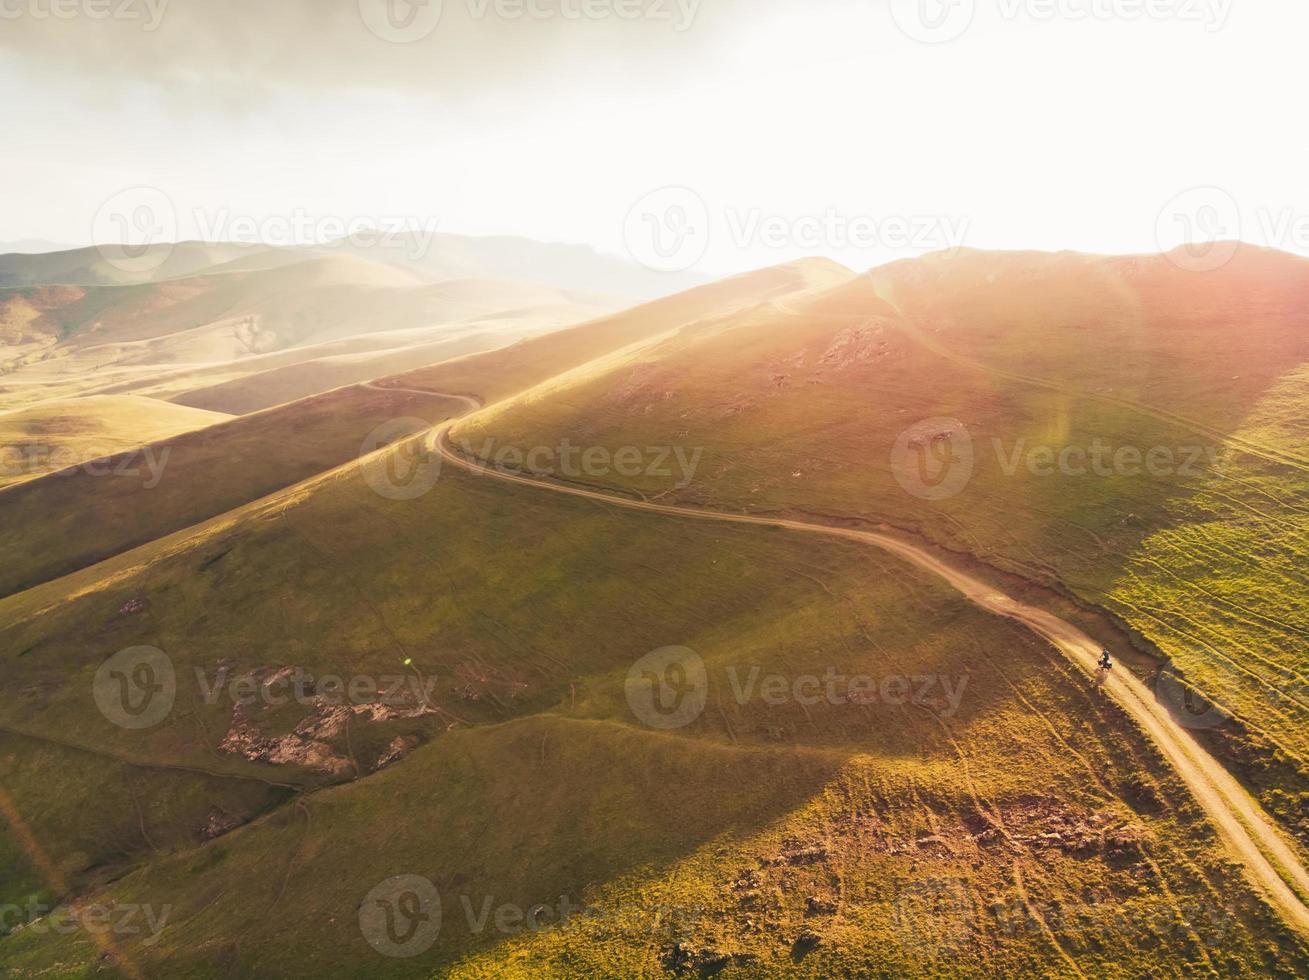 vue aérienne cycliste dans les montagnes de la campagne arménienne pittoresque cyclotourisme à l'extérieur en solo dans un paysage d'été chaud avec fond de ciel lumineux au coucher du soleil. image de cyclisme inspirante photo